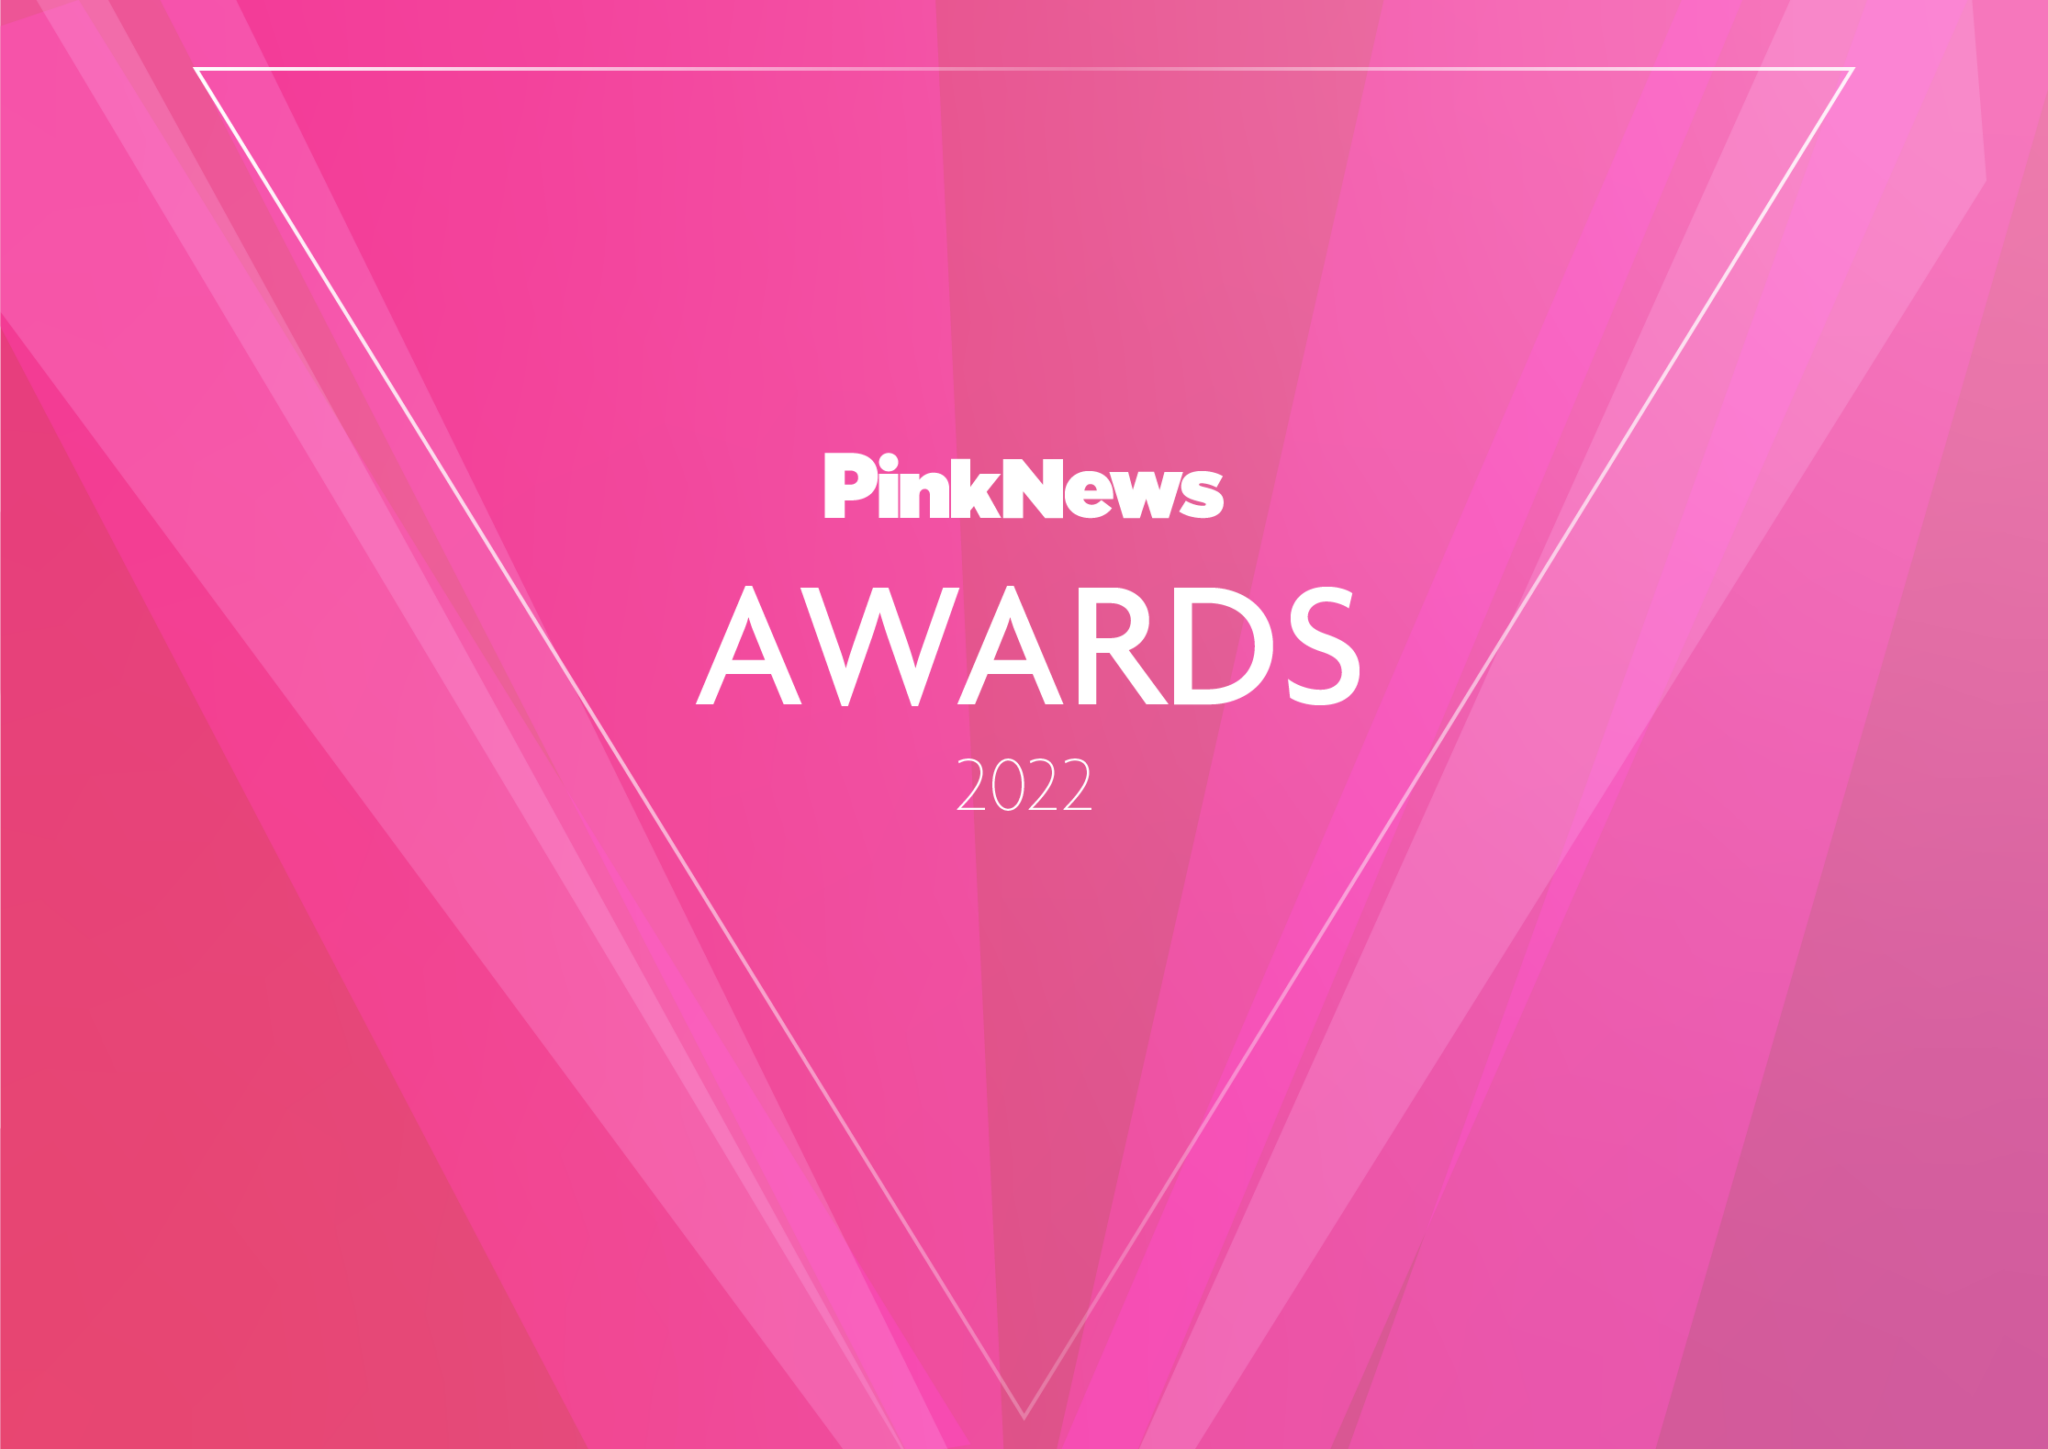 PinkNews Awards 2022